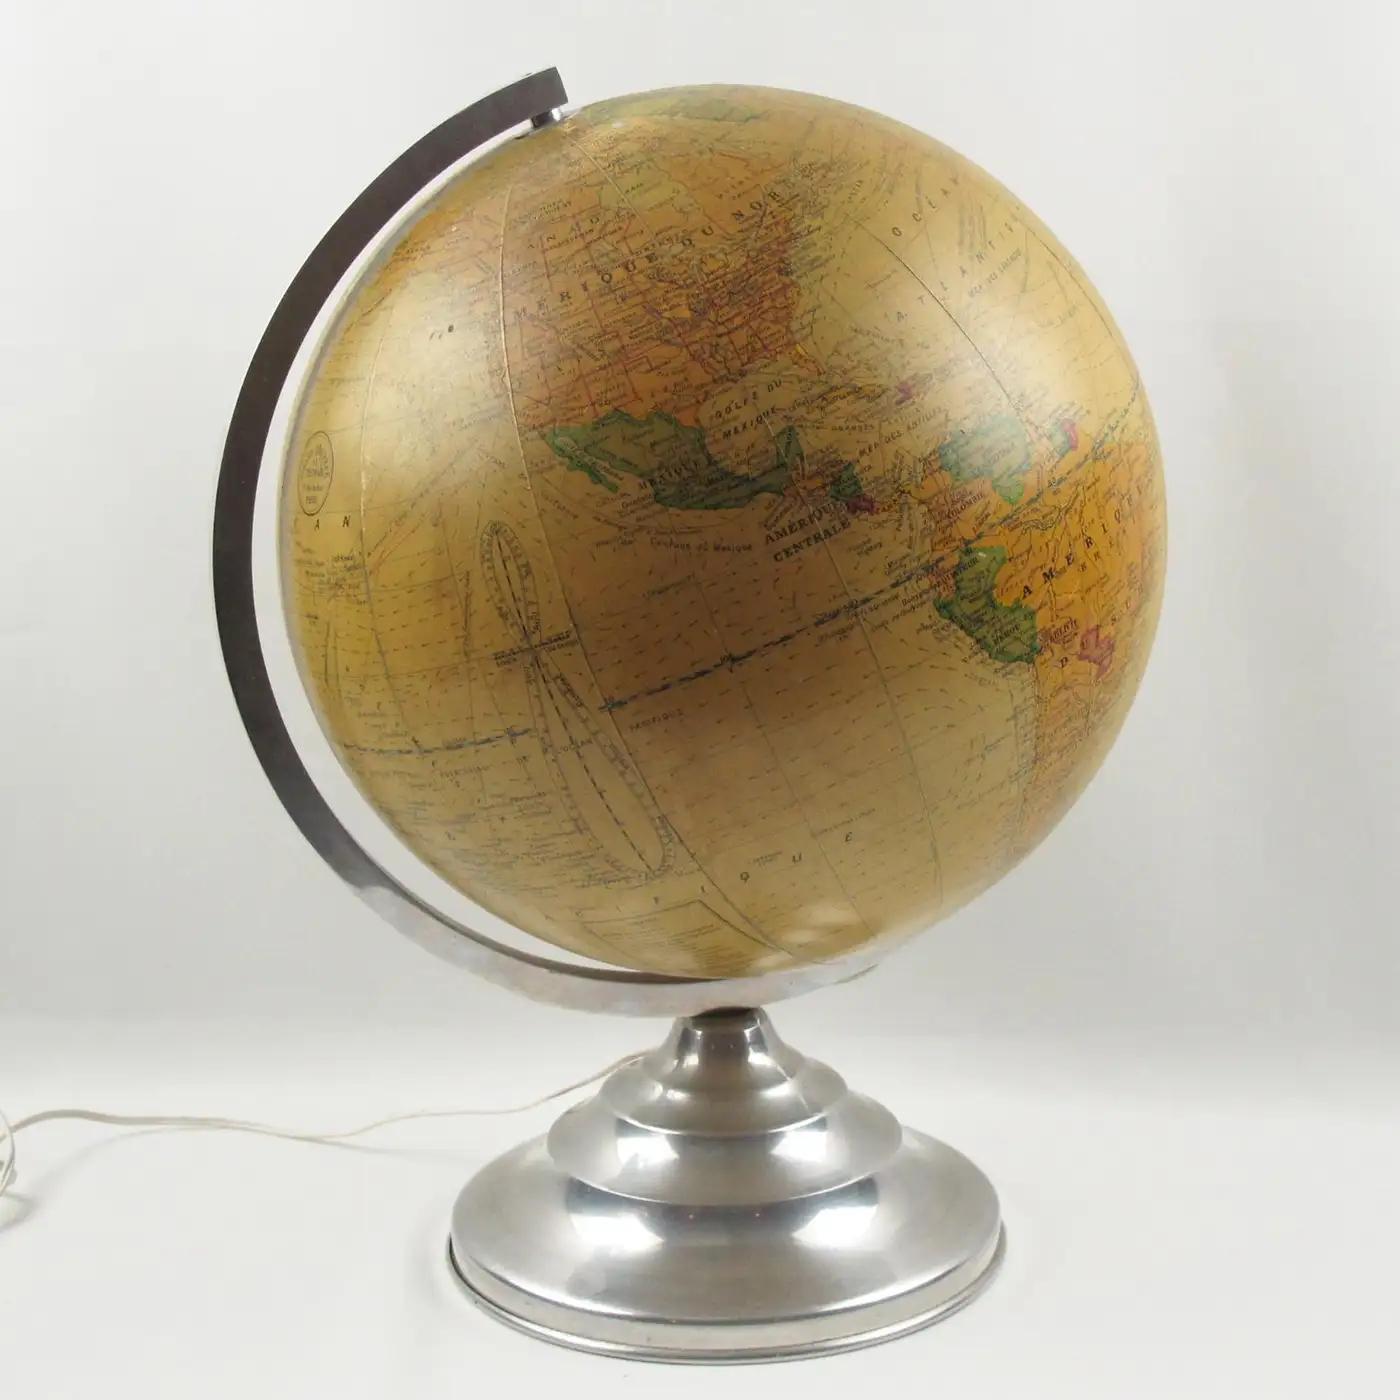 Girard, Barrere und Thomas Paris stellten in den 1950er Jahren diesen beeindruckenden Leuchtglobus für die Erde her. Der Geograph J. Forest hat sie entworfen. Dieser Globus aus Bibliotheksglas ist mit bedrucktem Papier überzogen und dreht sich auf